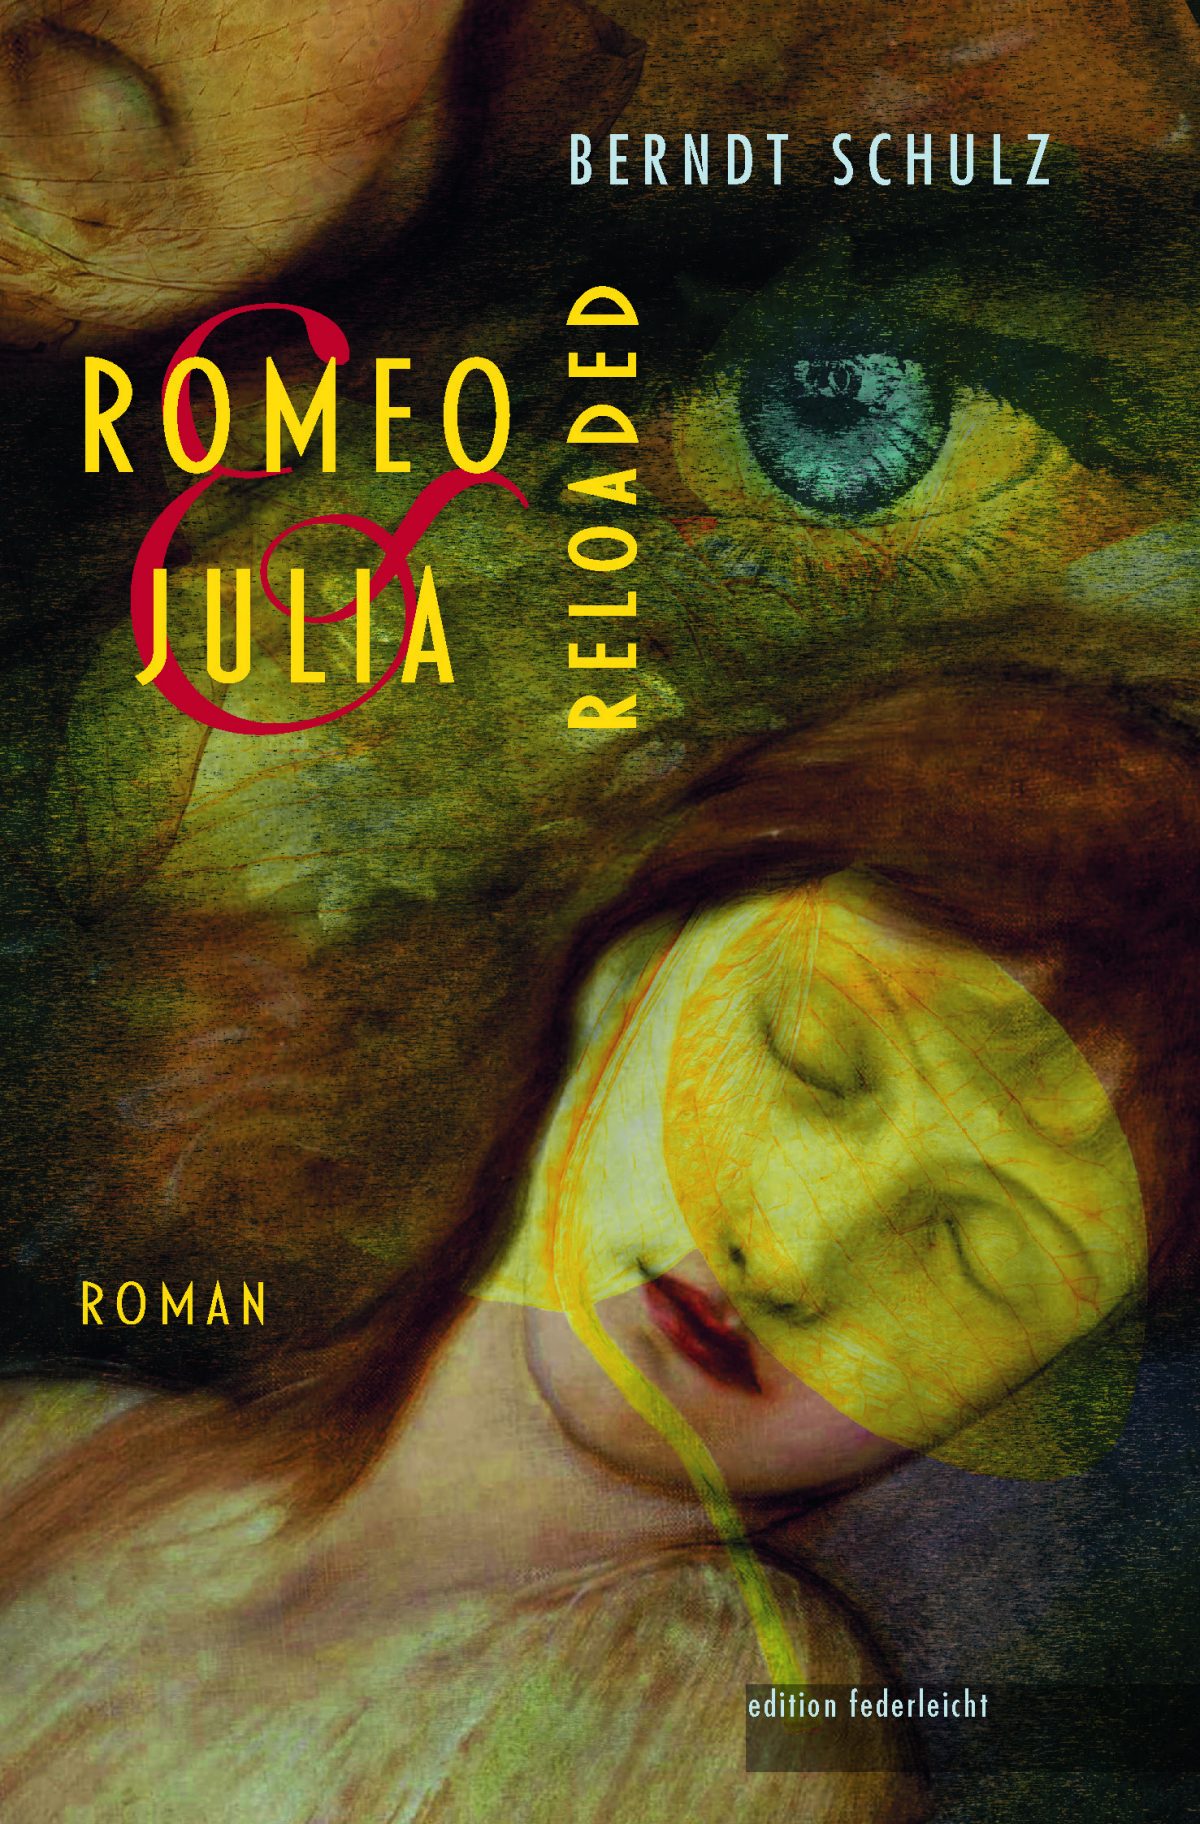 Lesetipp: Unsterblich, wer liebt. Berndt Schulz feiert in „Romeo und Julia. Reloaded“ die Liebe, ganz im Geiste Shakespeares und doch modern.  